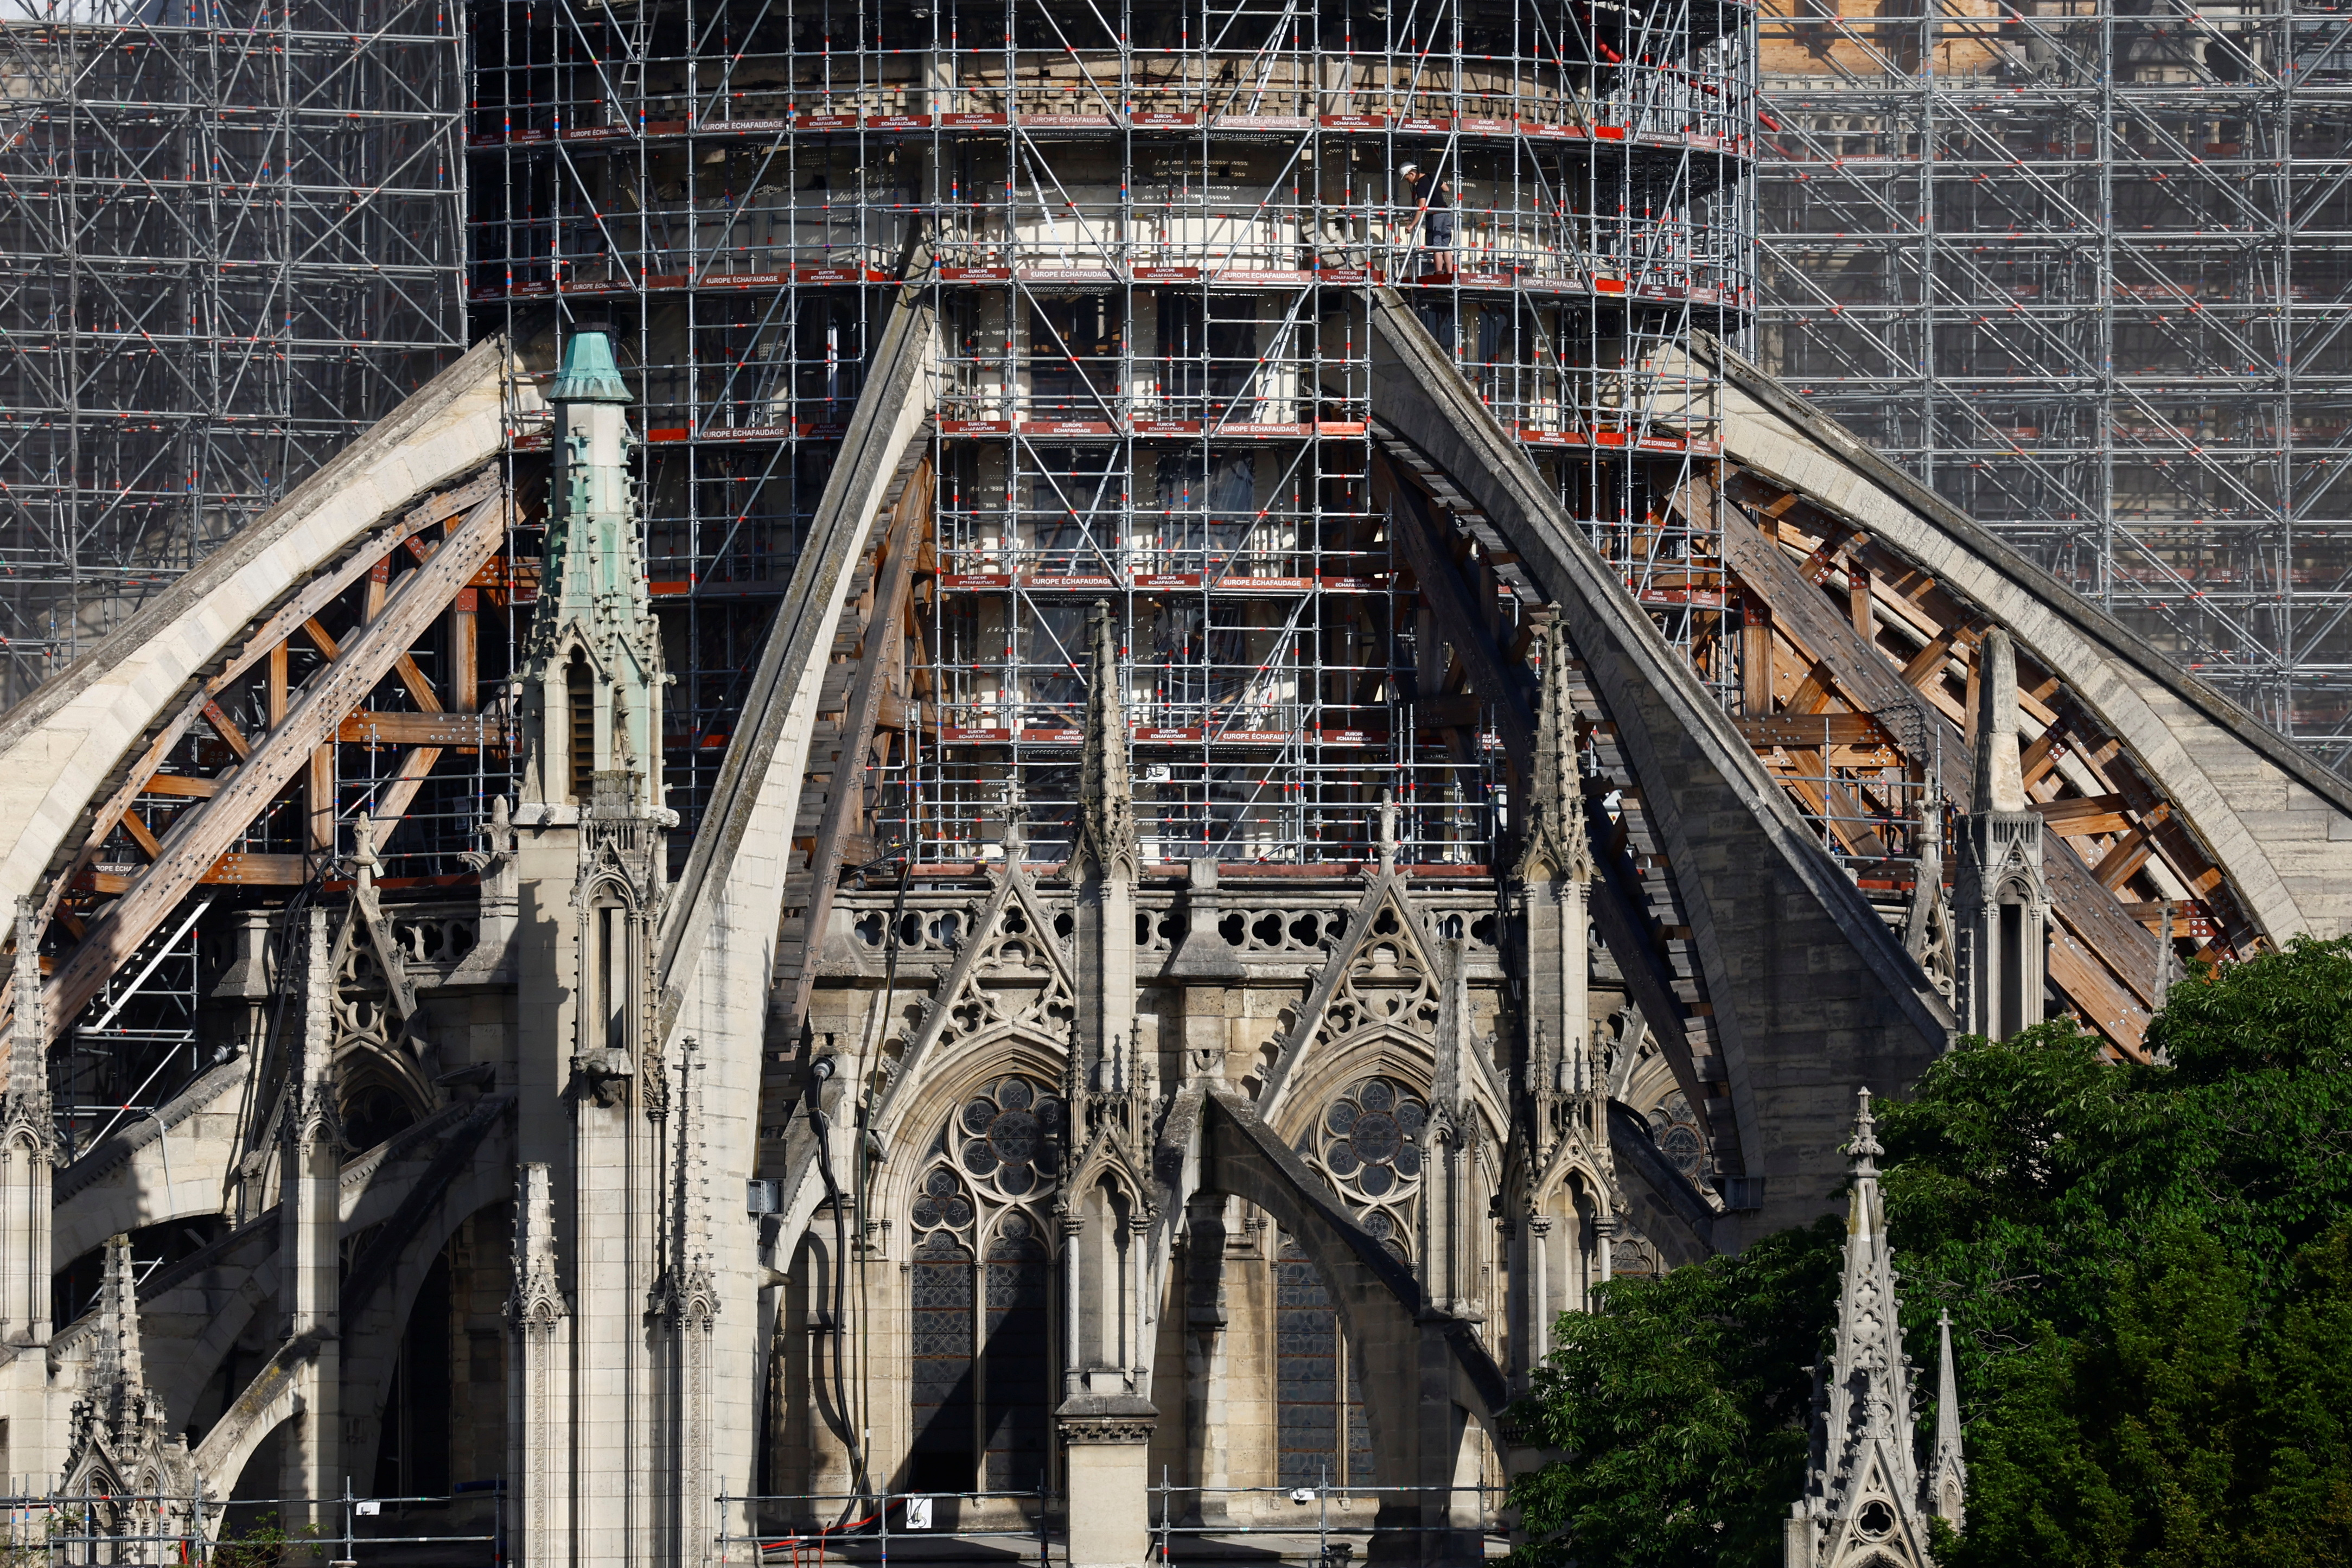 View of the Notre Dame de Paris Cathedral under reconstruction